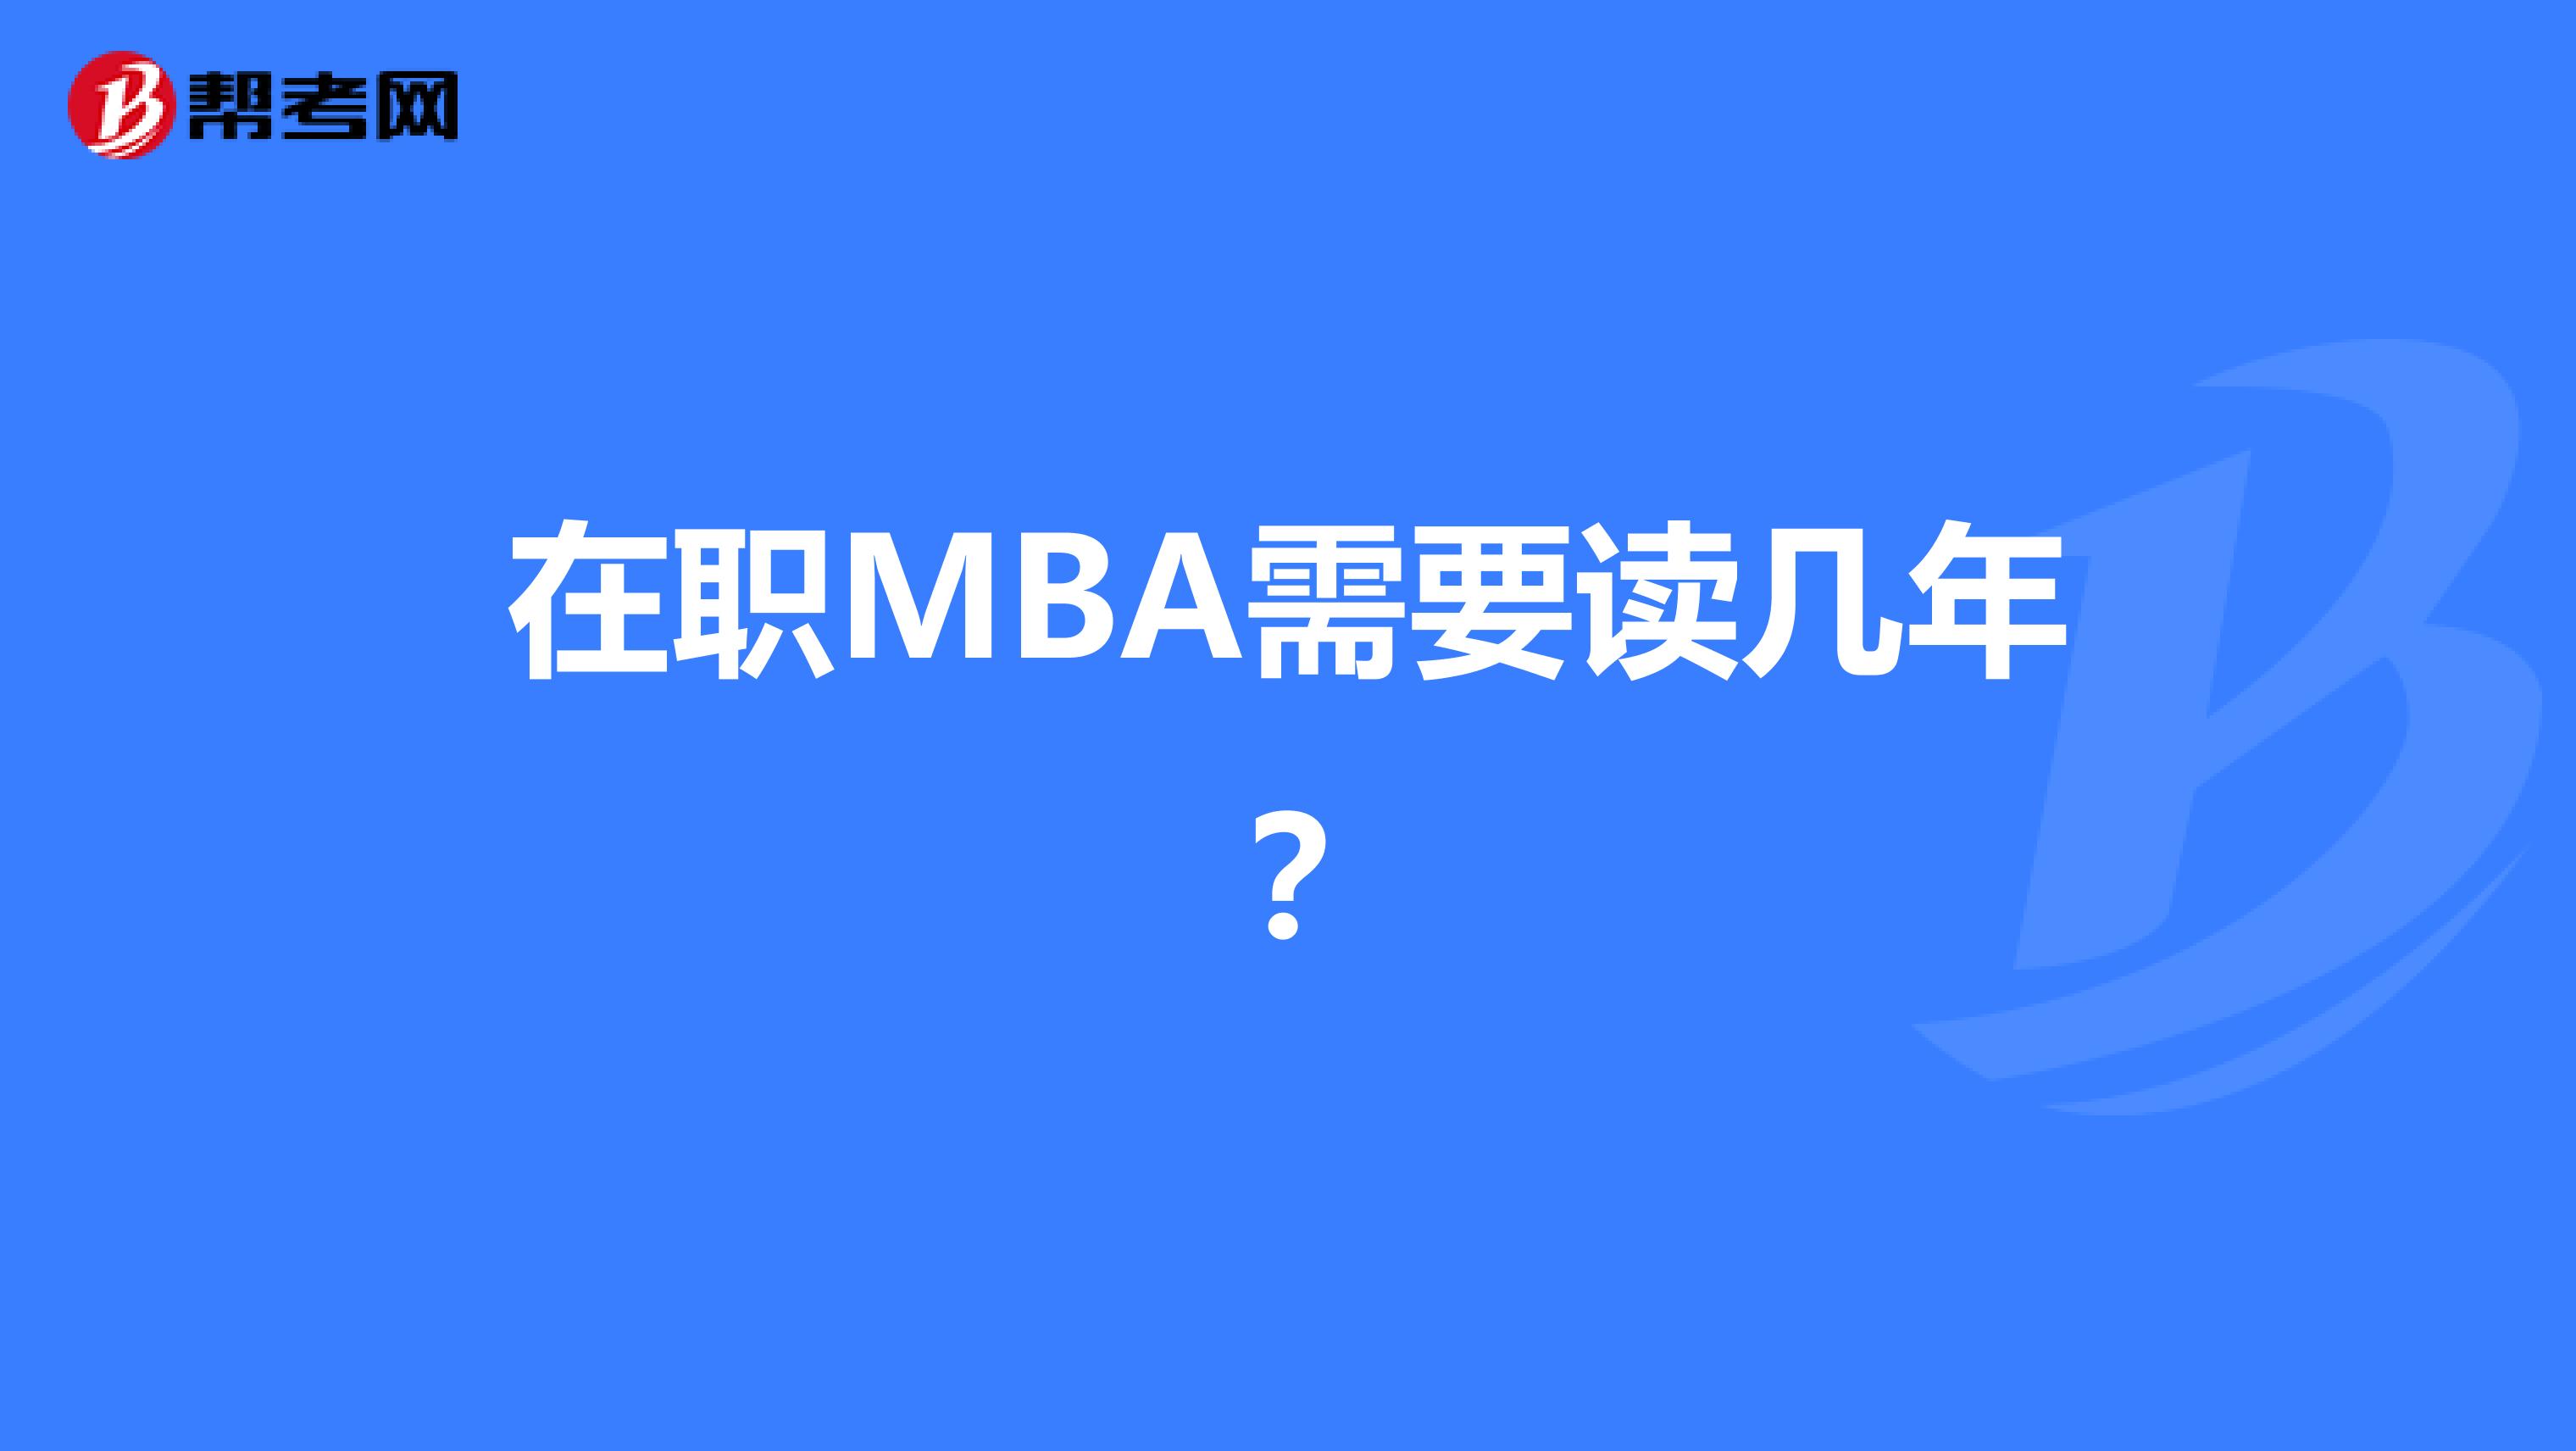 在职MBA需要读几年？